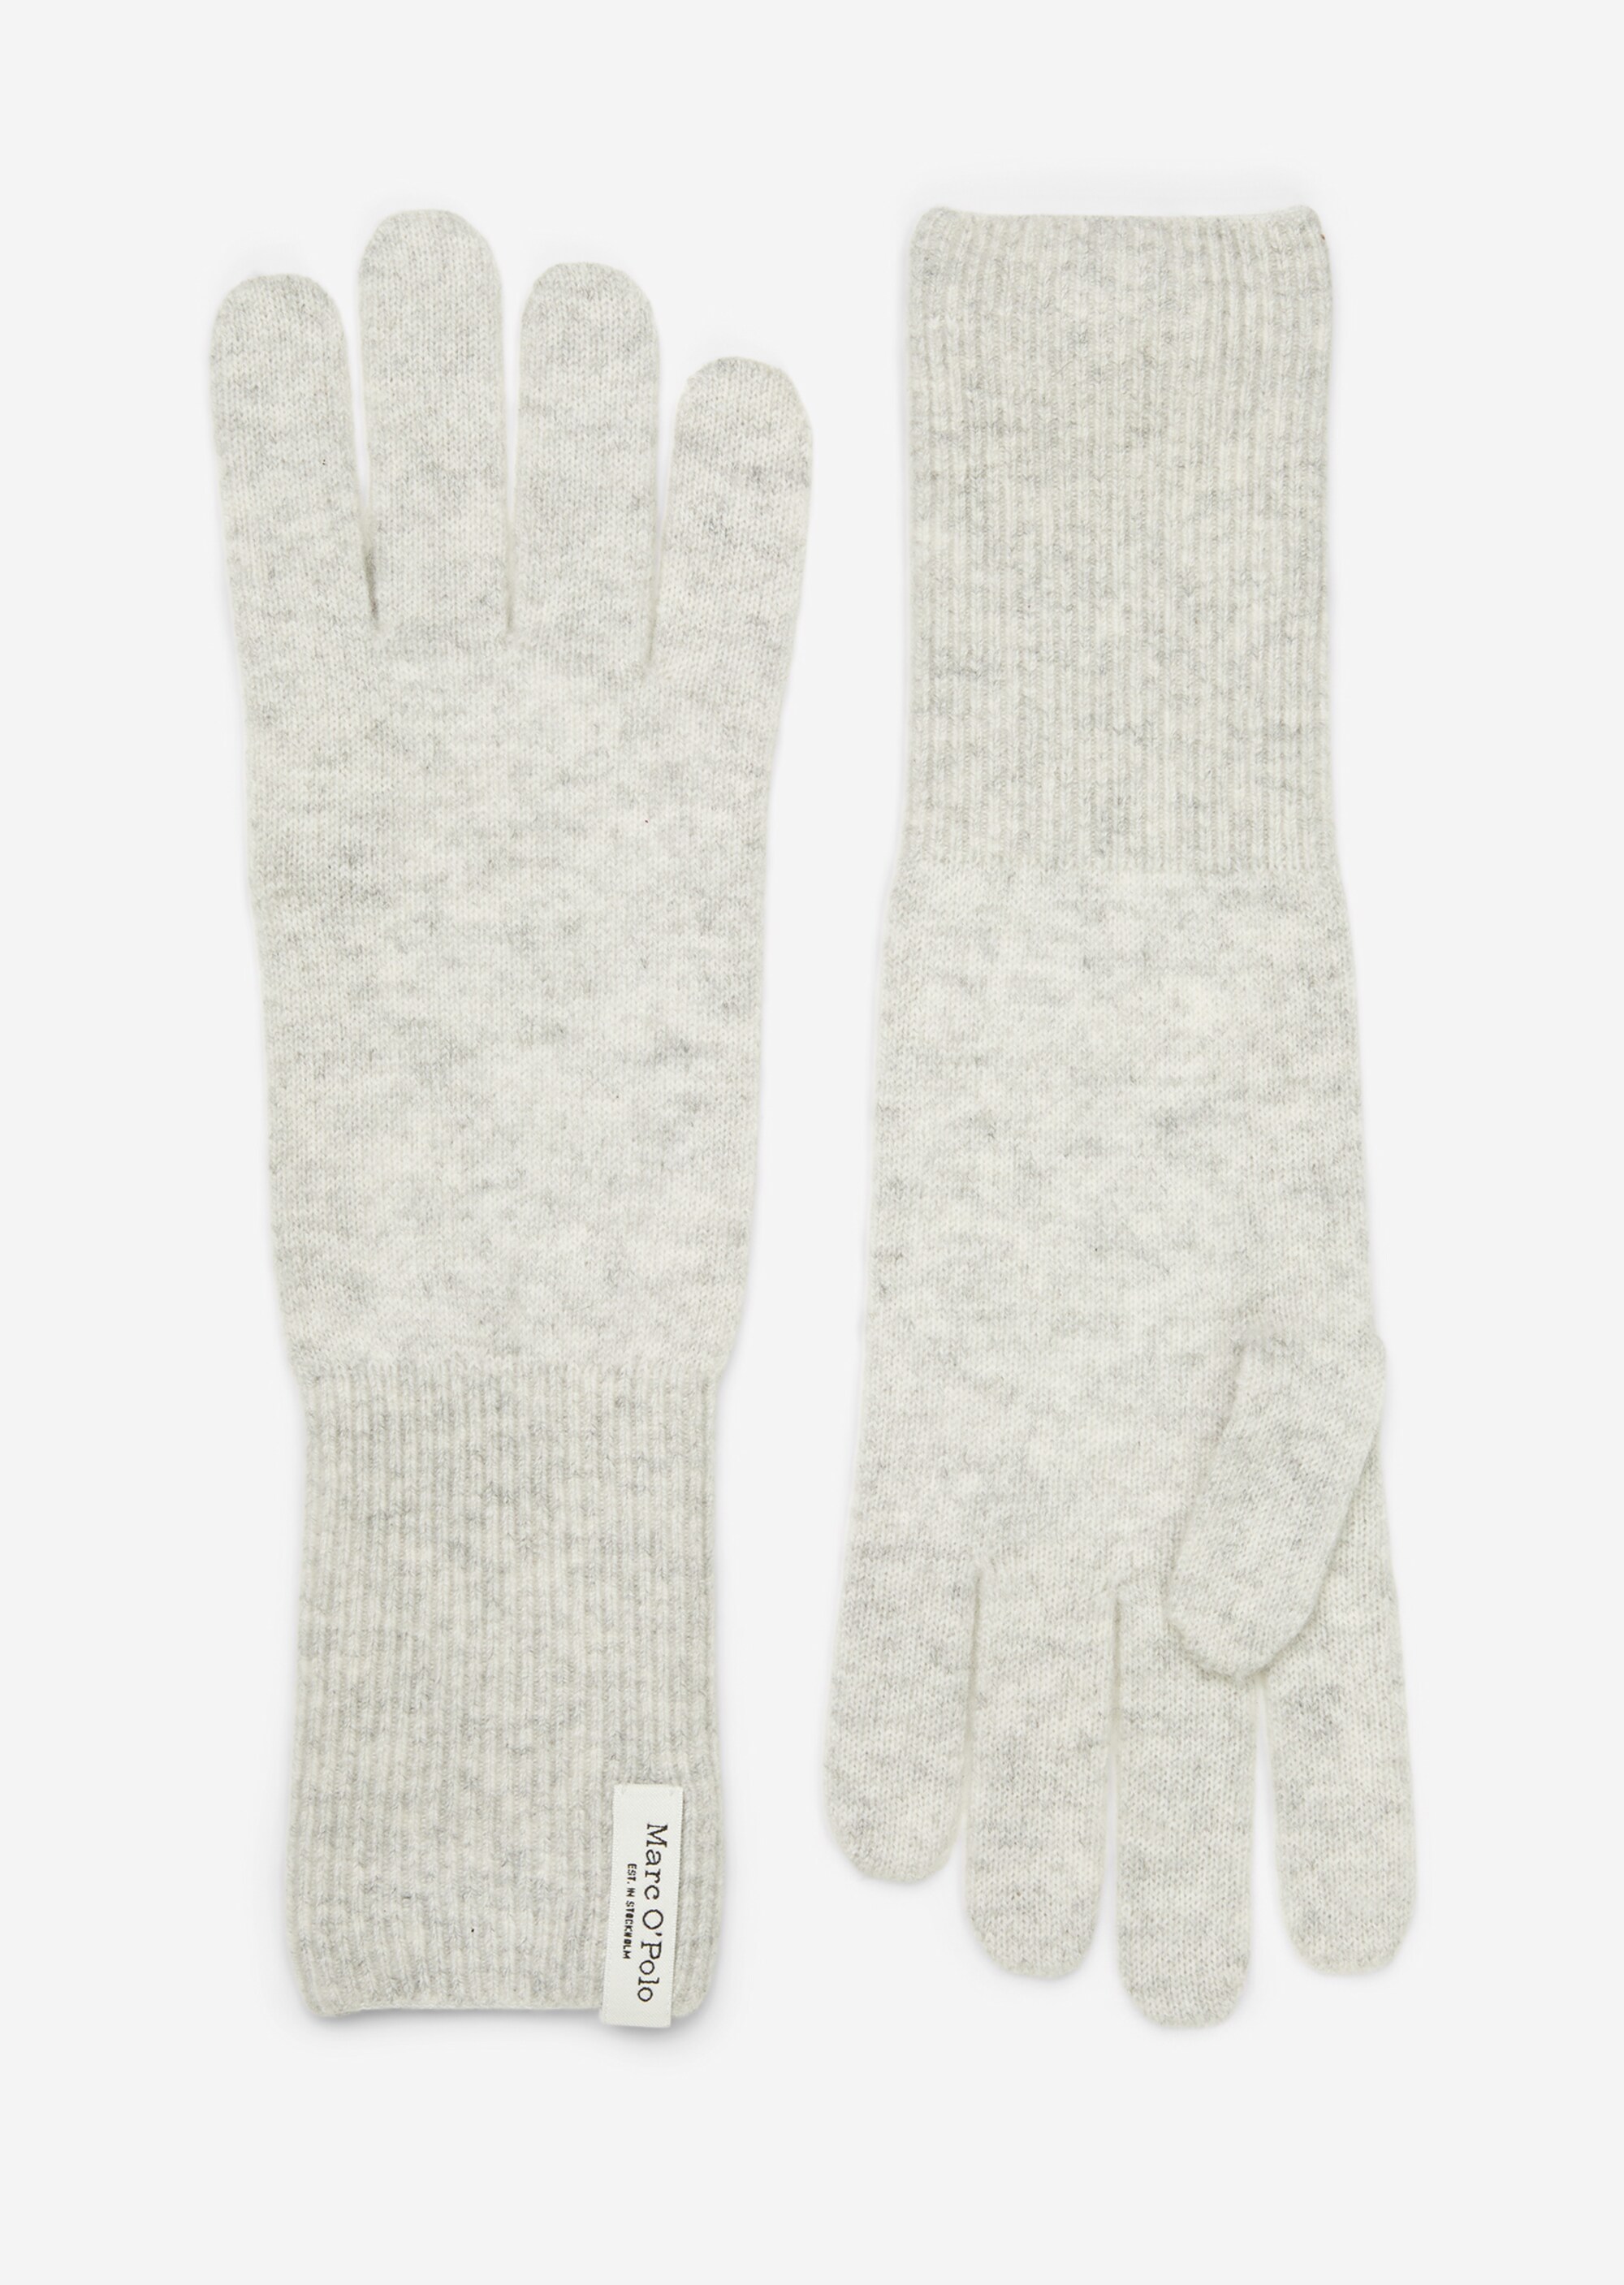 Fingerhandschuhe aus Schurwolle-Kaschmirwolle-Mix - grau | Handschuhe |  MARC O'POLO